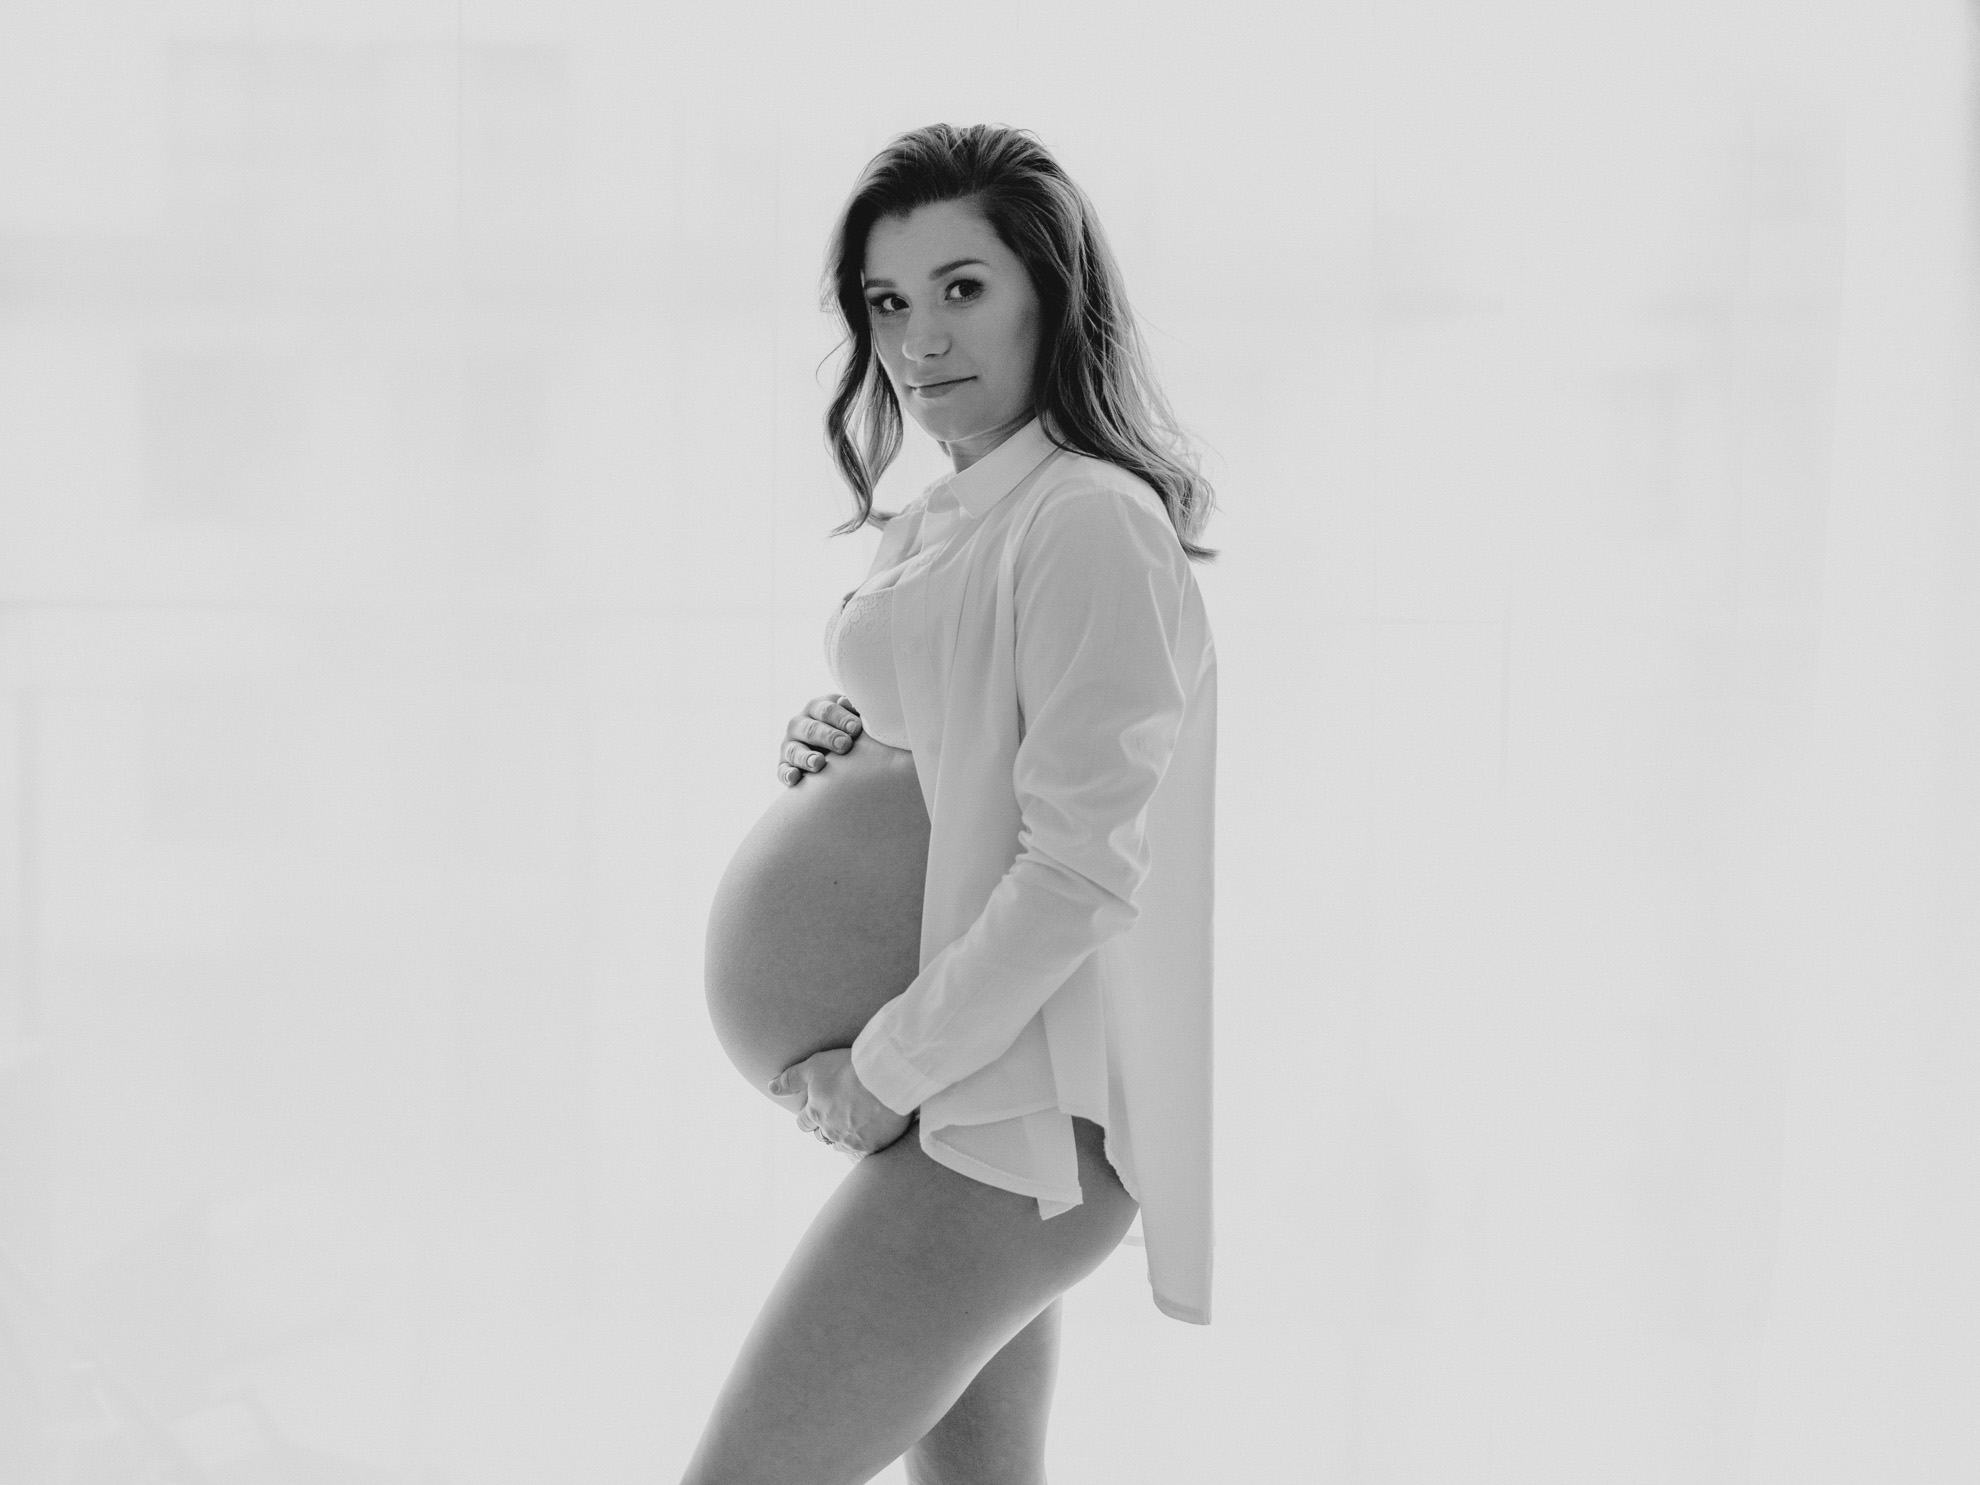 Retrografie fotografia sesja ciążowa warszawa